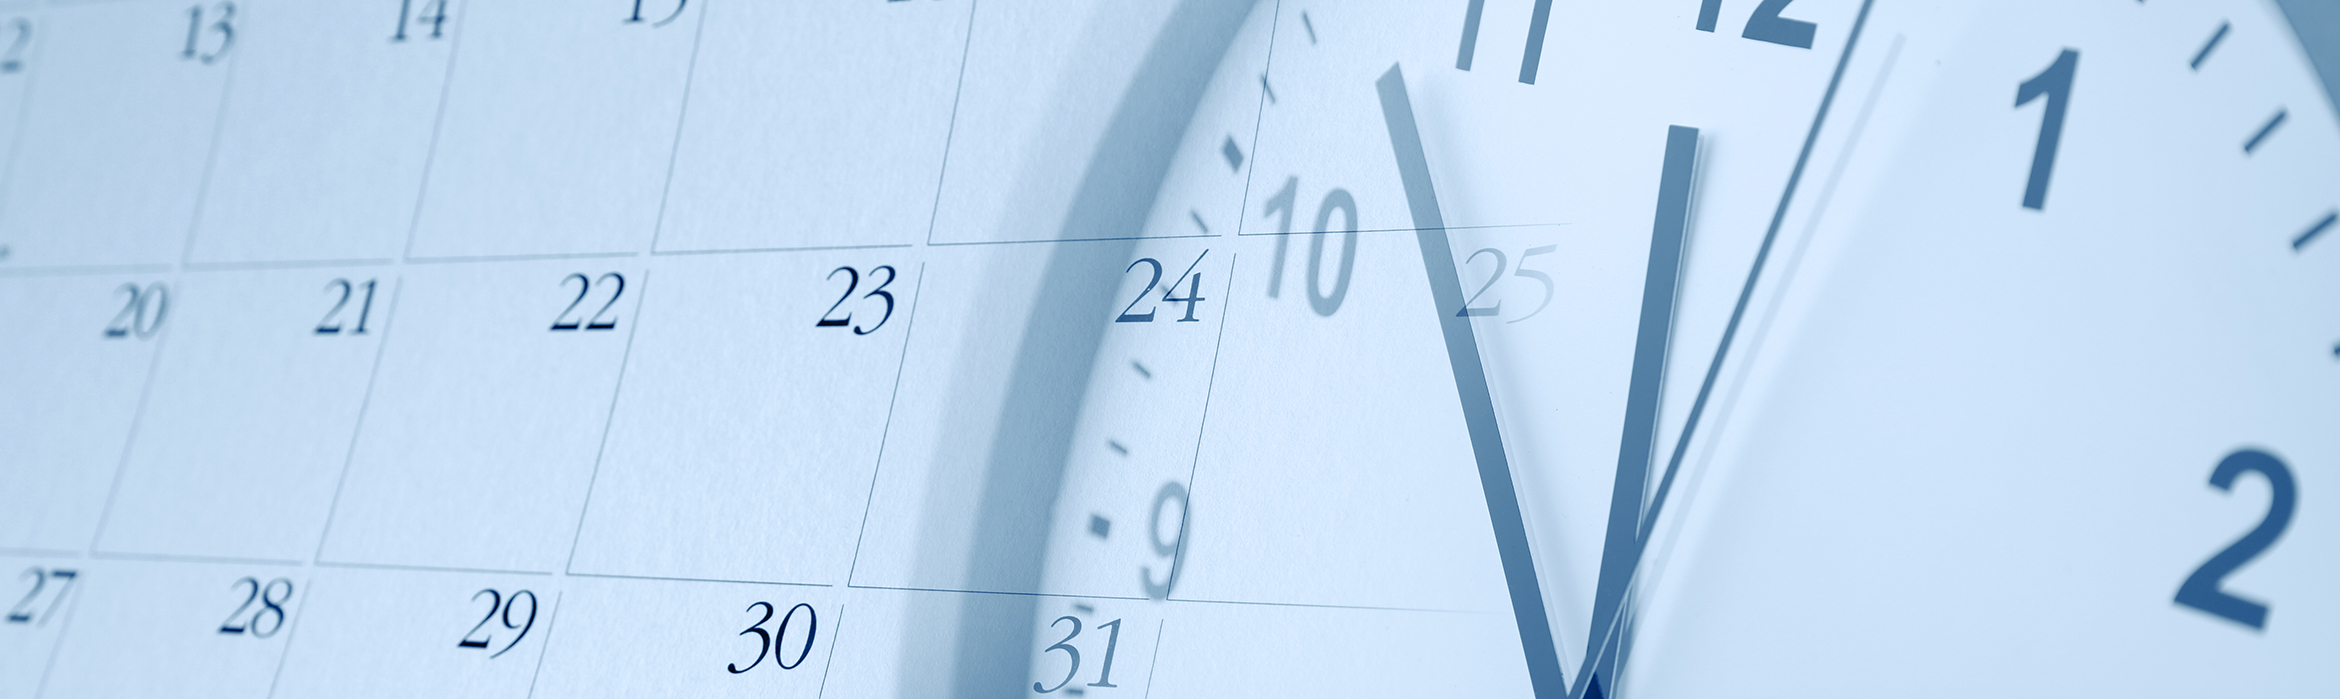 La imagen muestra un calendario y la imagen de un reloj superpuesta